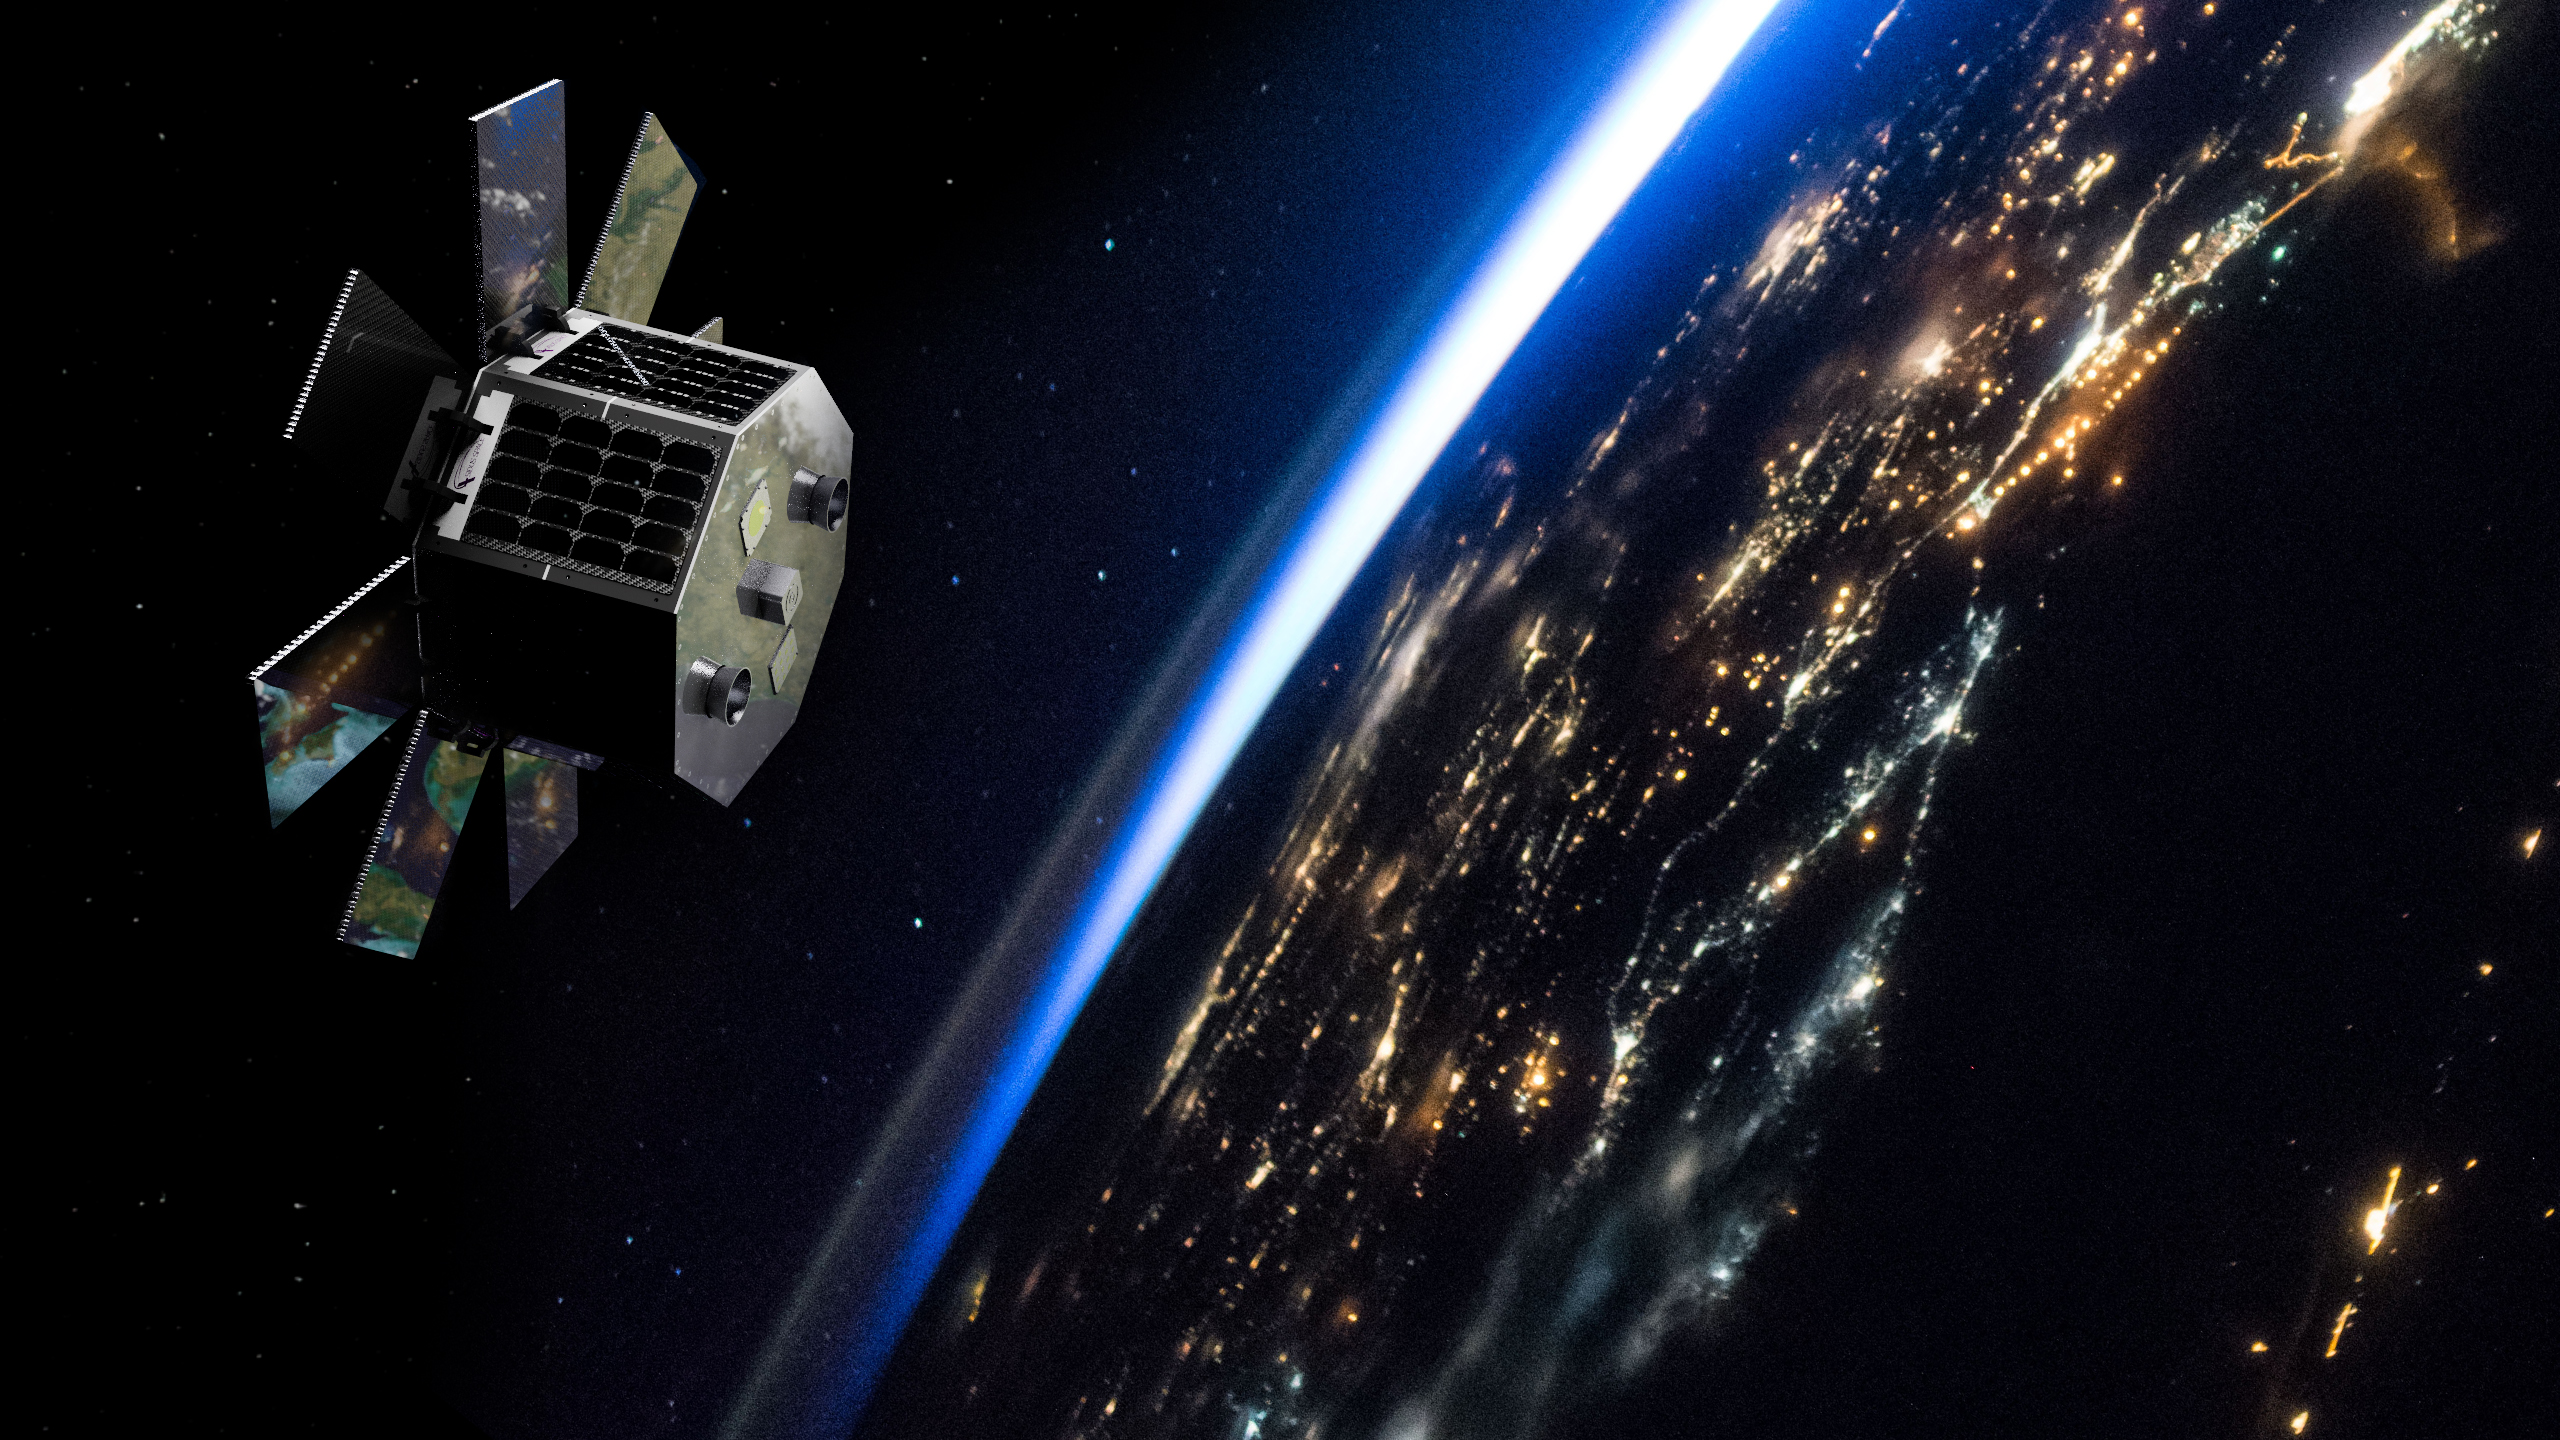 लियो तारामंडल के लिए सिडस स्पेस ने 5.2 मिलियन डॉलर जुटाए